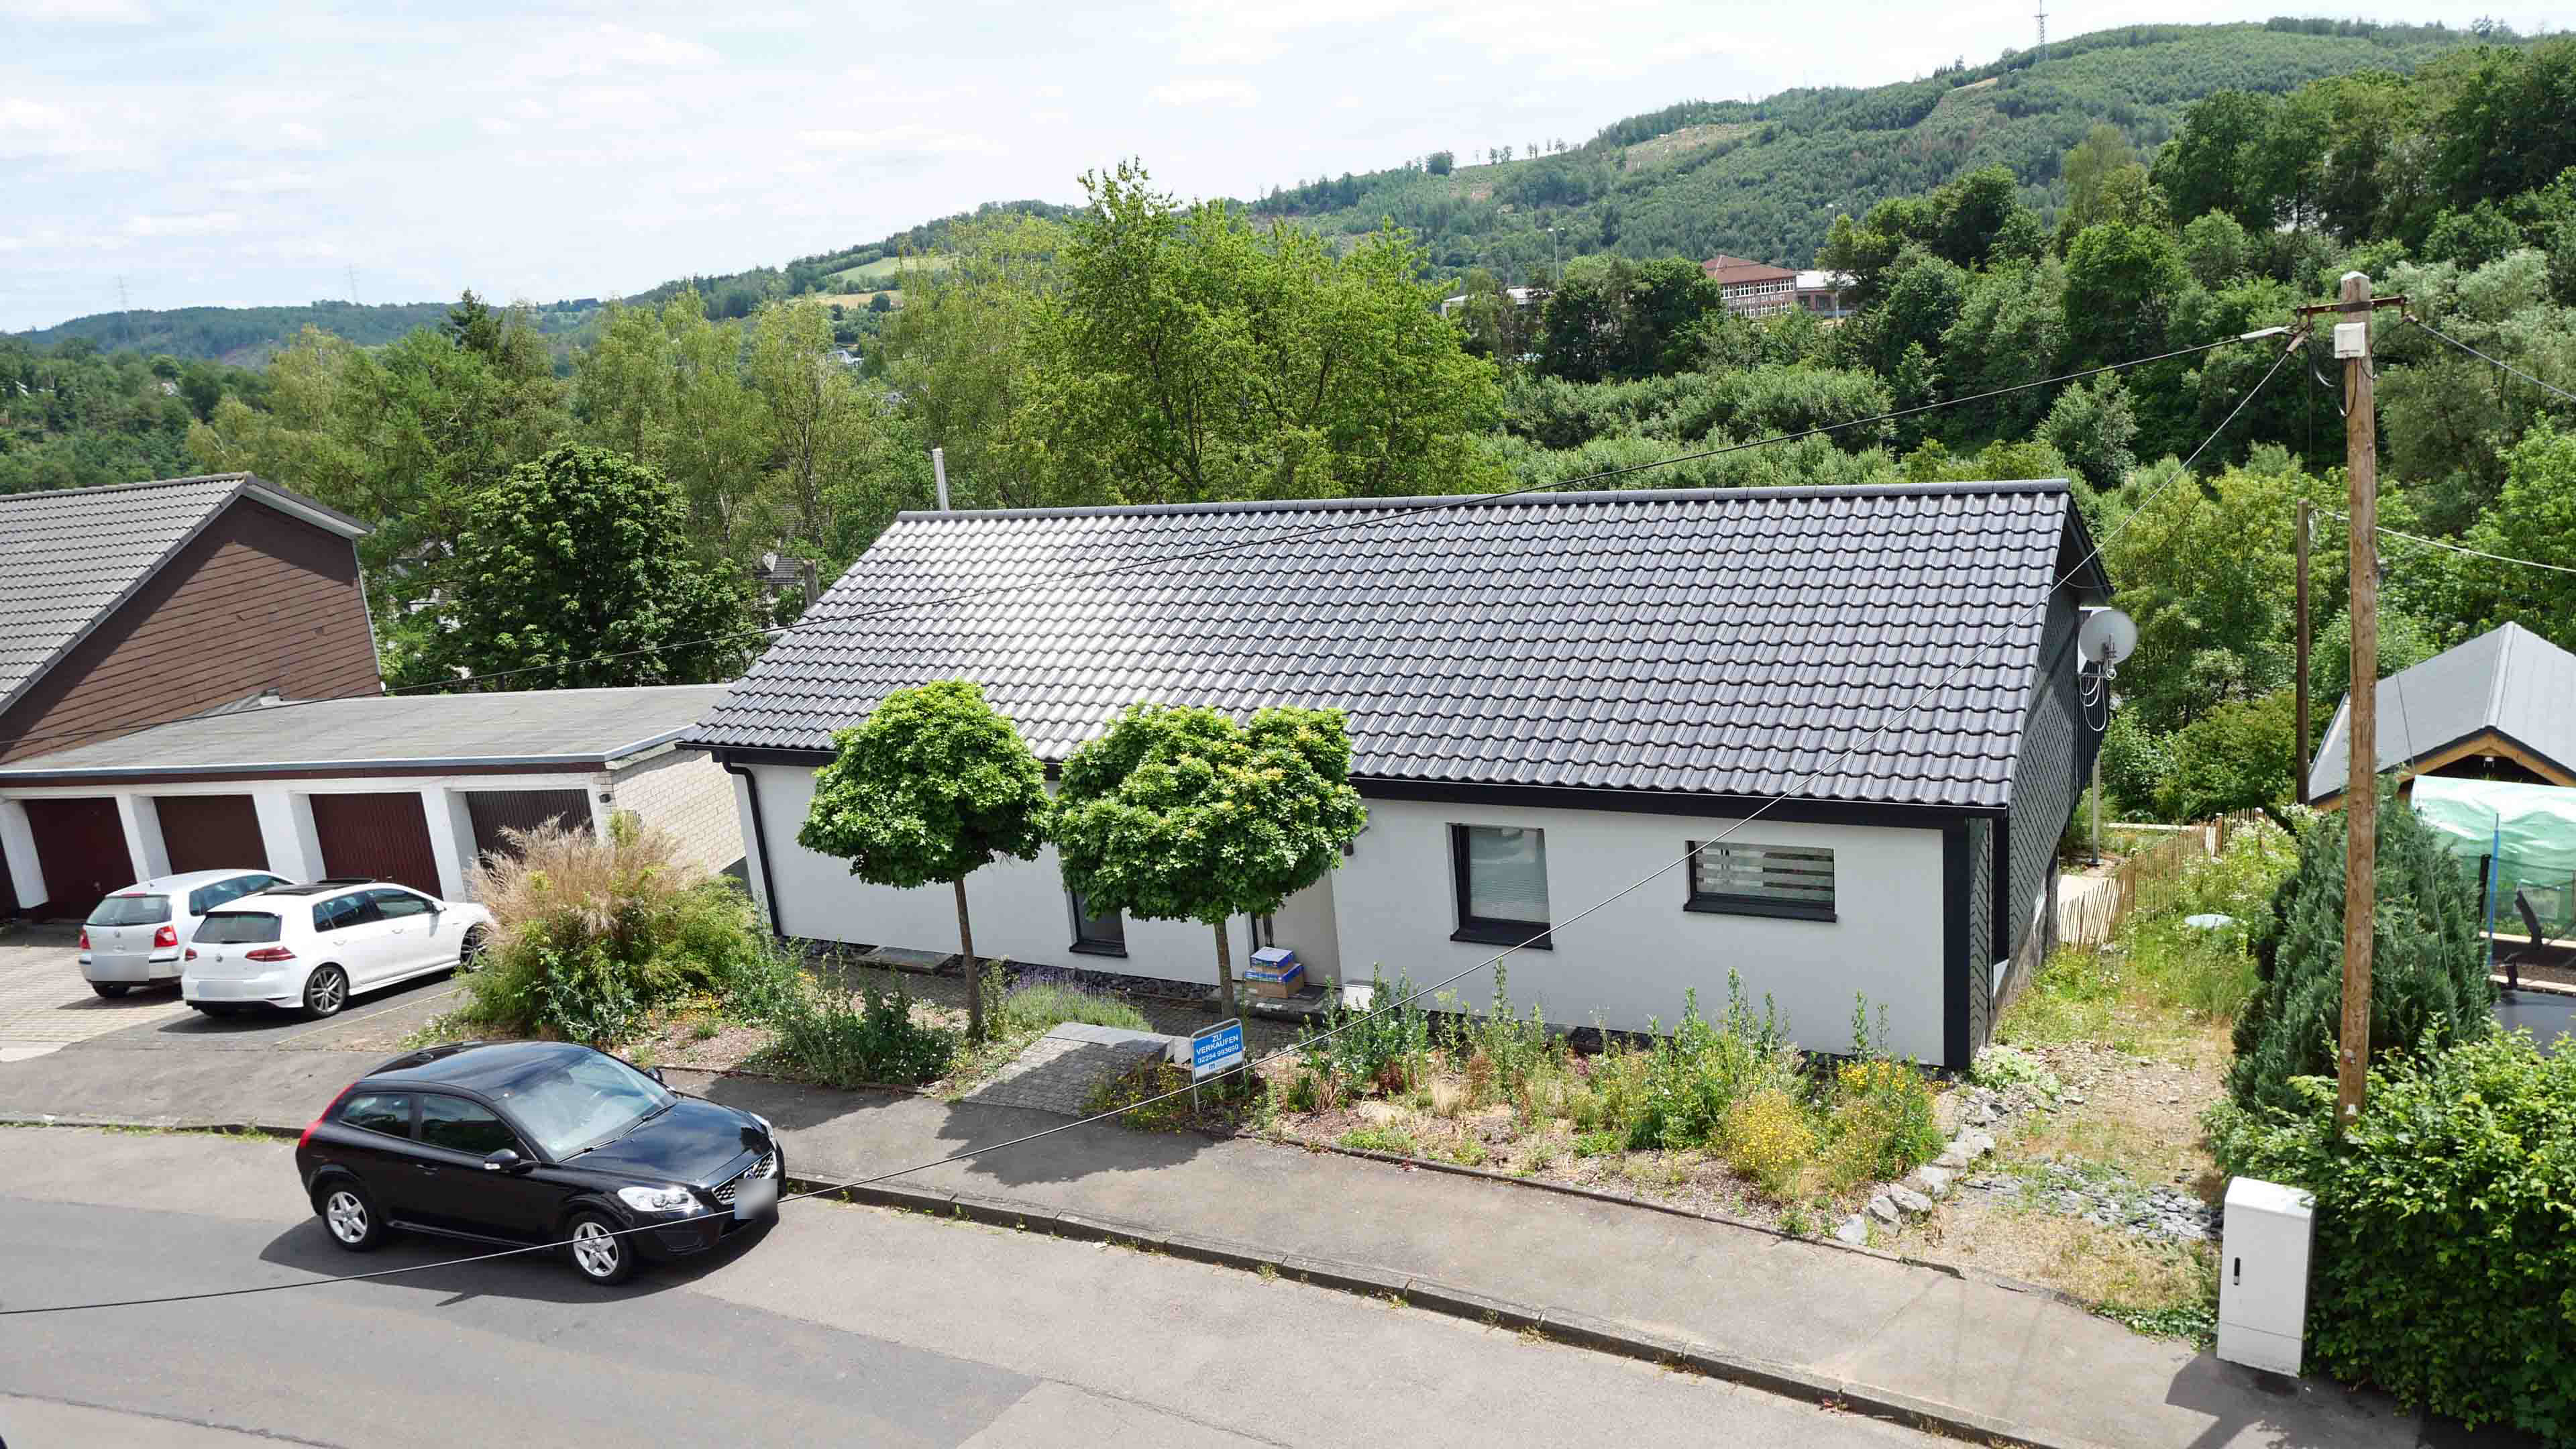 Morsbach: Topsanierter Bungalow mit Garage und herrlicher Terrasse, herrliche Wohnlage mit Panoramablick auf Morsbach